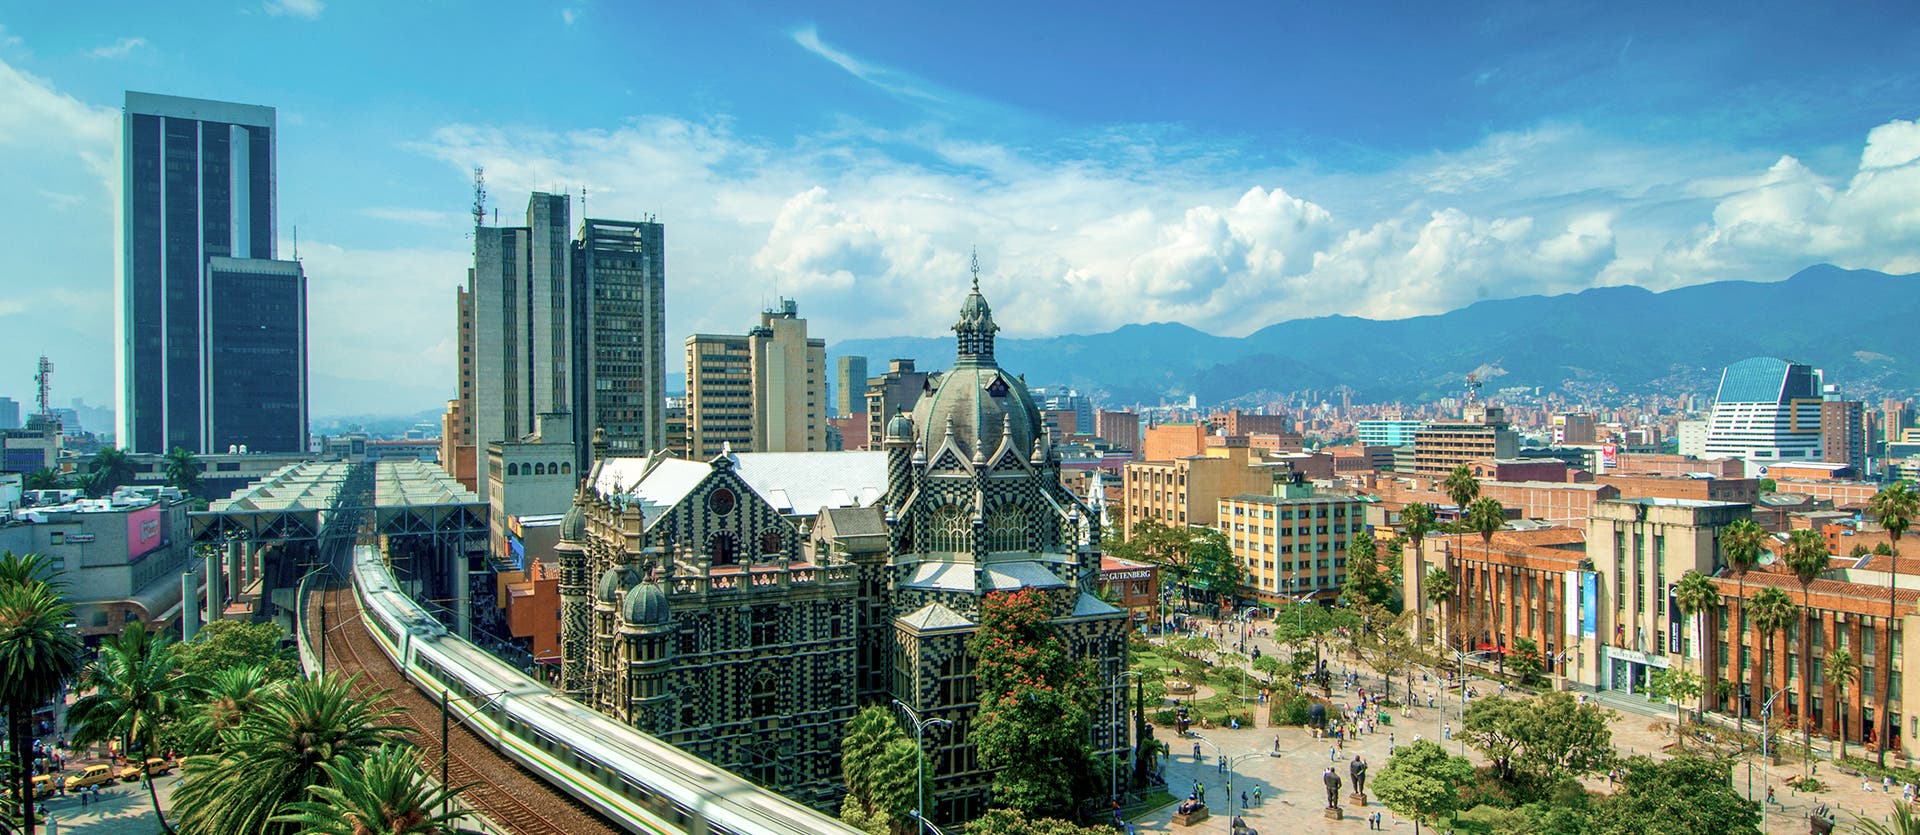 Sehenswertes in Kolumbien Medellín